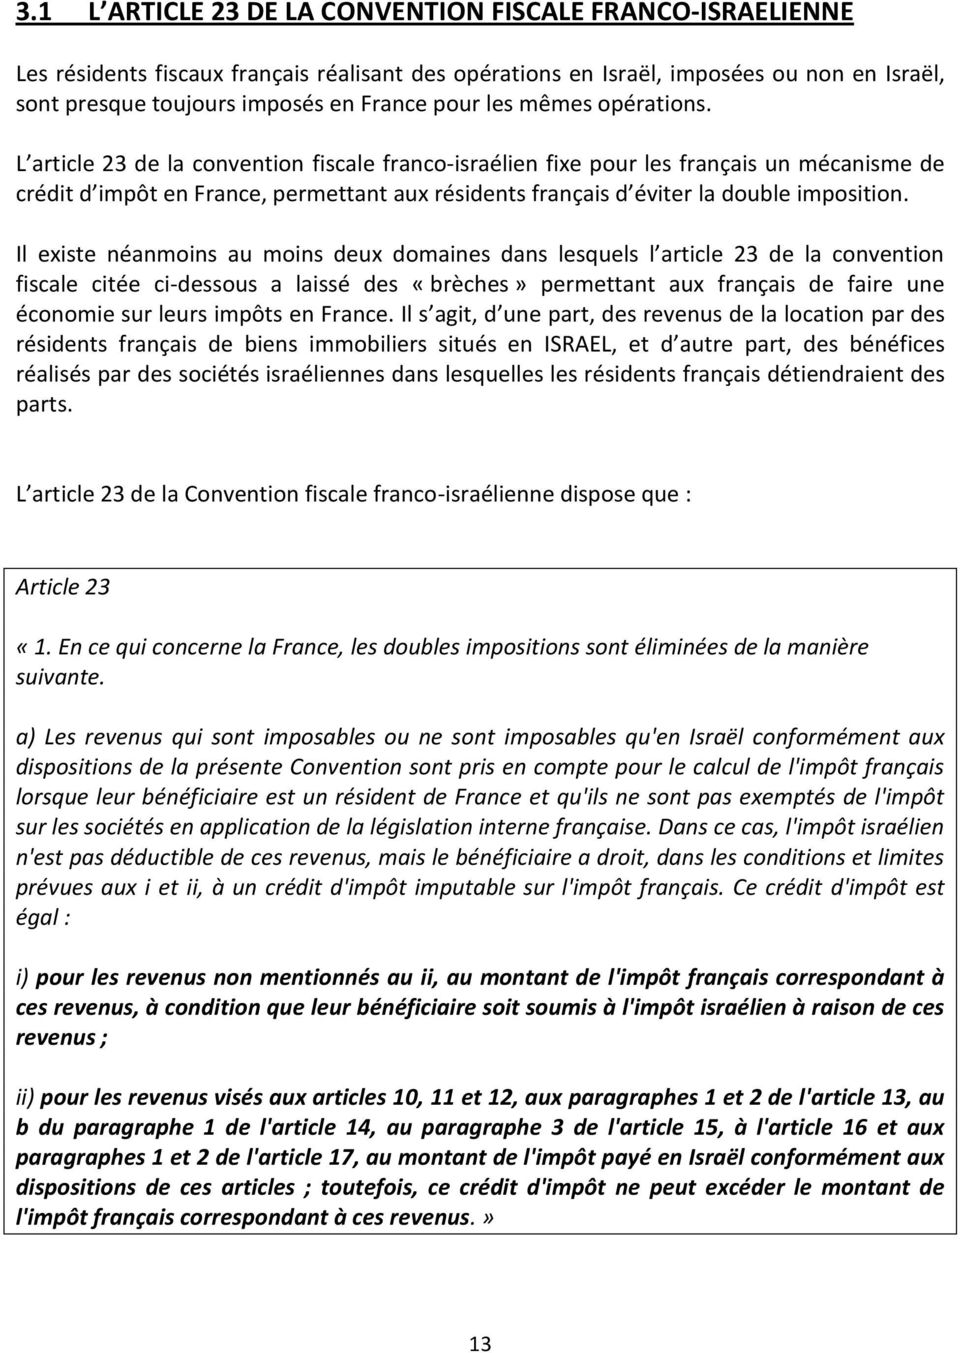 L article 23 de la convention fiscale franco-israélien fixe pour les français un mécanisme de crédit d impôt en France, permettant aux résidents français d éviter la double imposition.